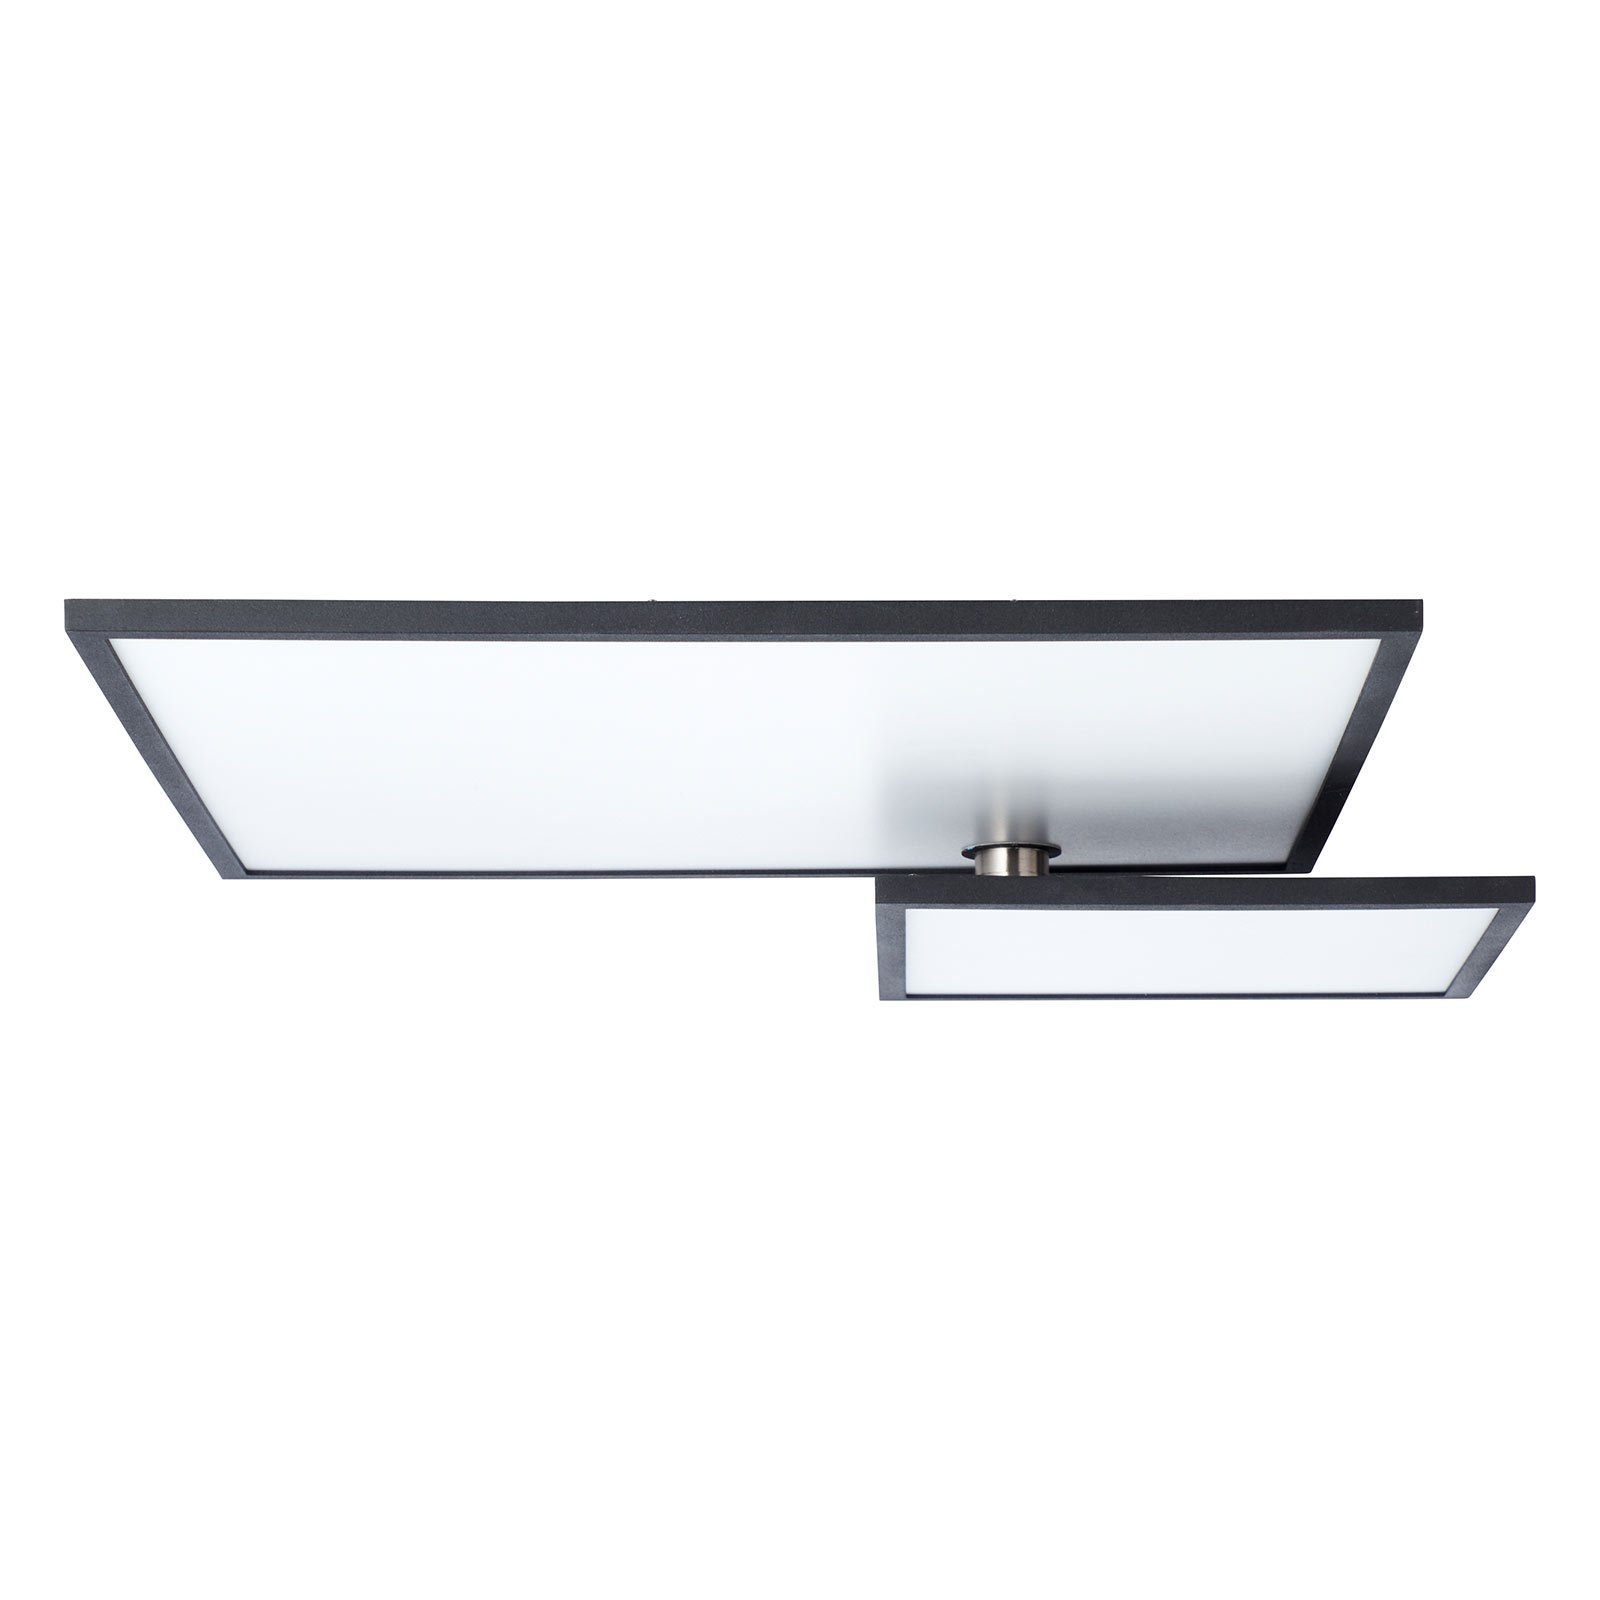 LED ceiling lamp Bility, rectangular black frame